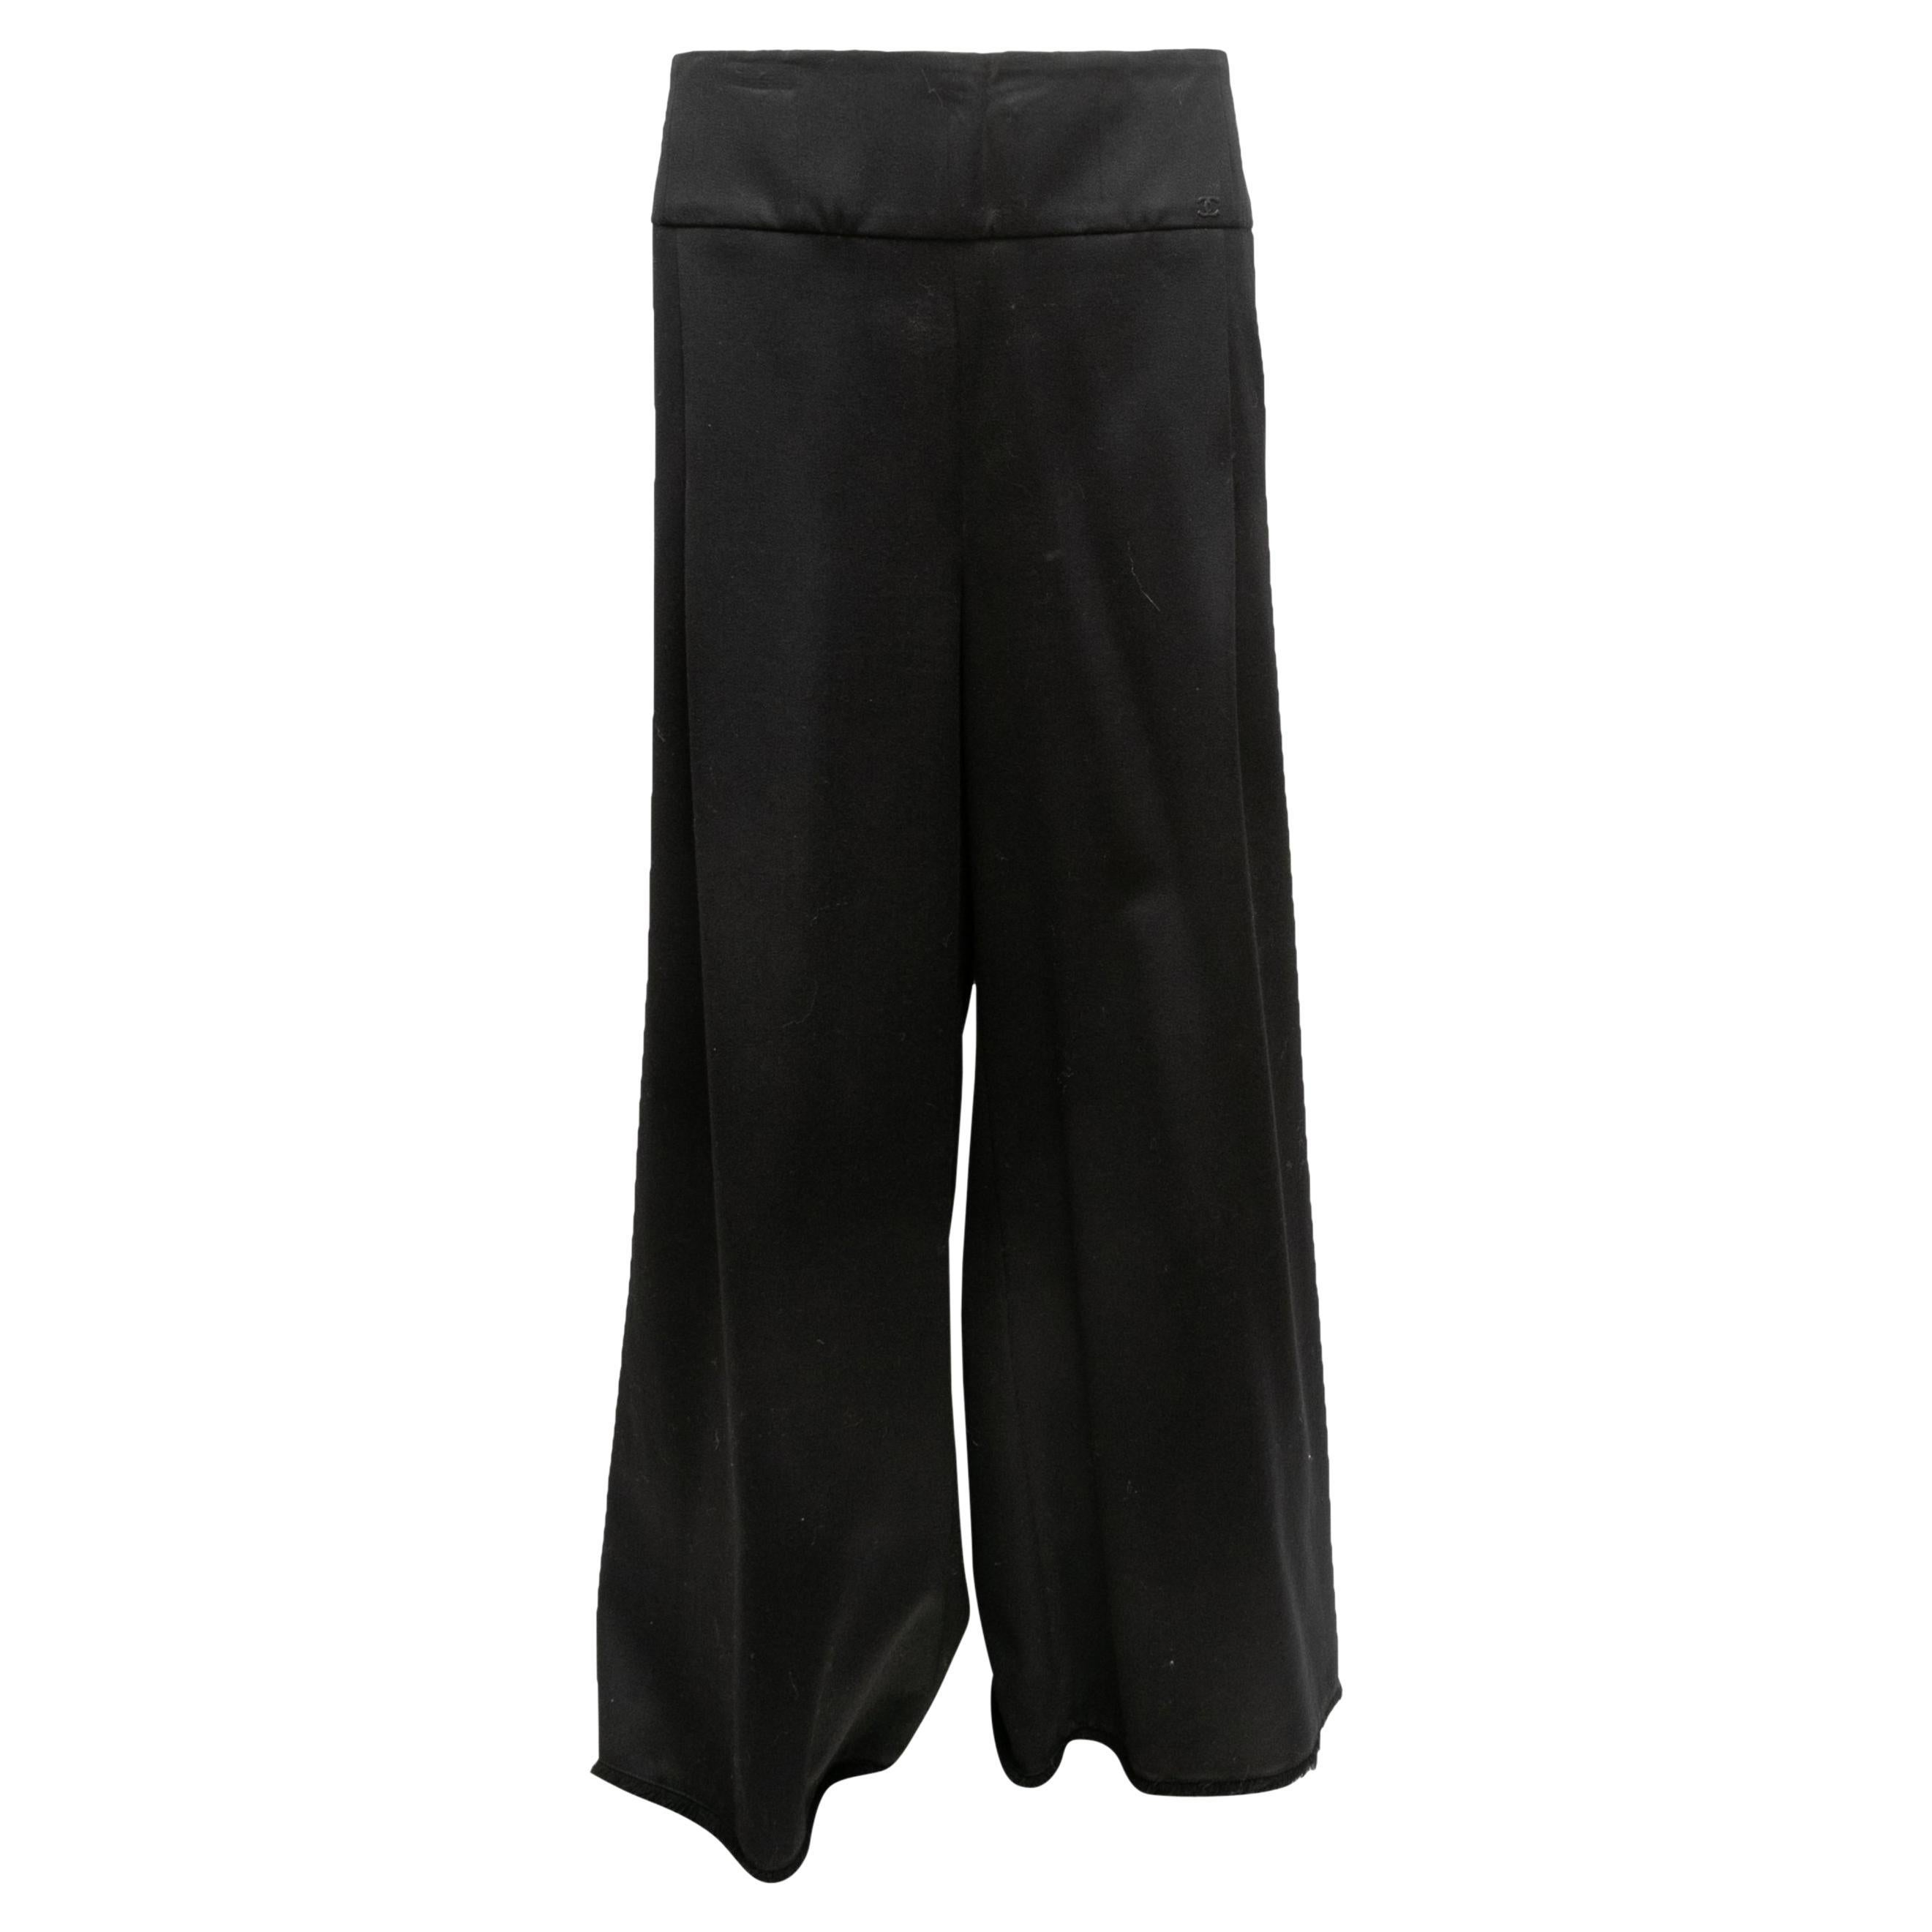 Pantalones de lana Chanel negros Otoño/Invierno 2006 Talla FR 48 en venta